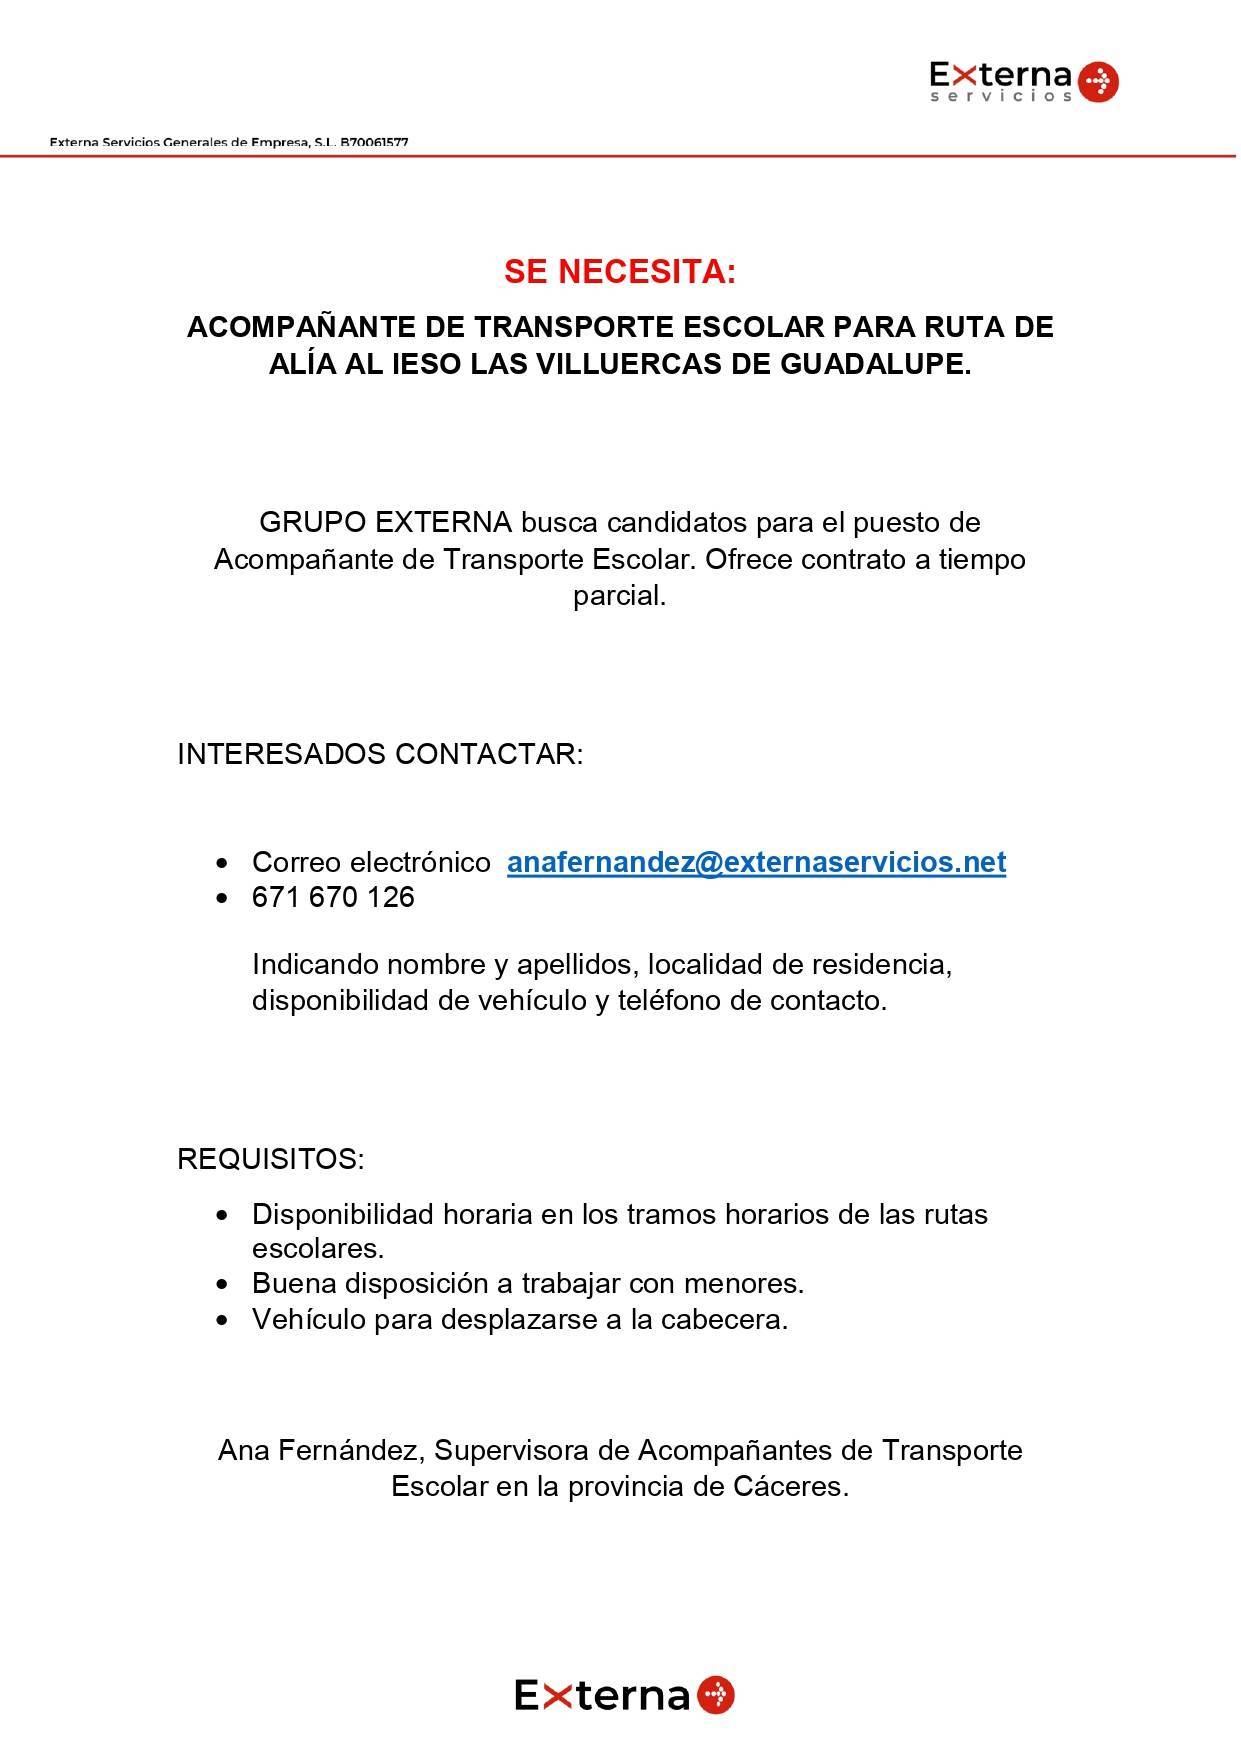 Acompañante de transporte escolar para ruta de Alía (Cáceres) a Guadalupe (Cáceres) (2021)